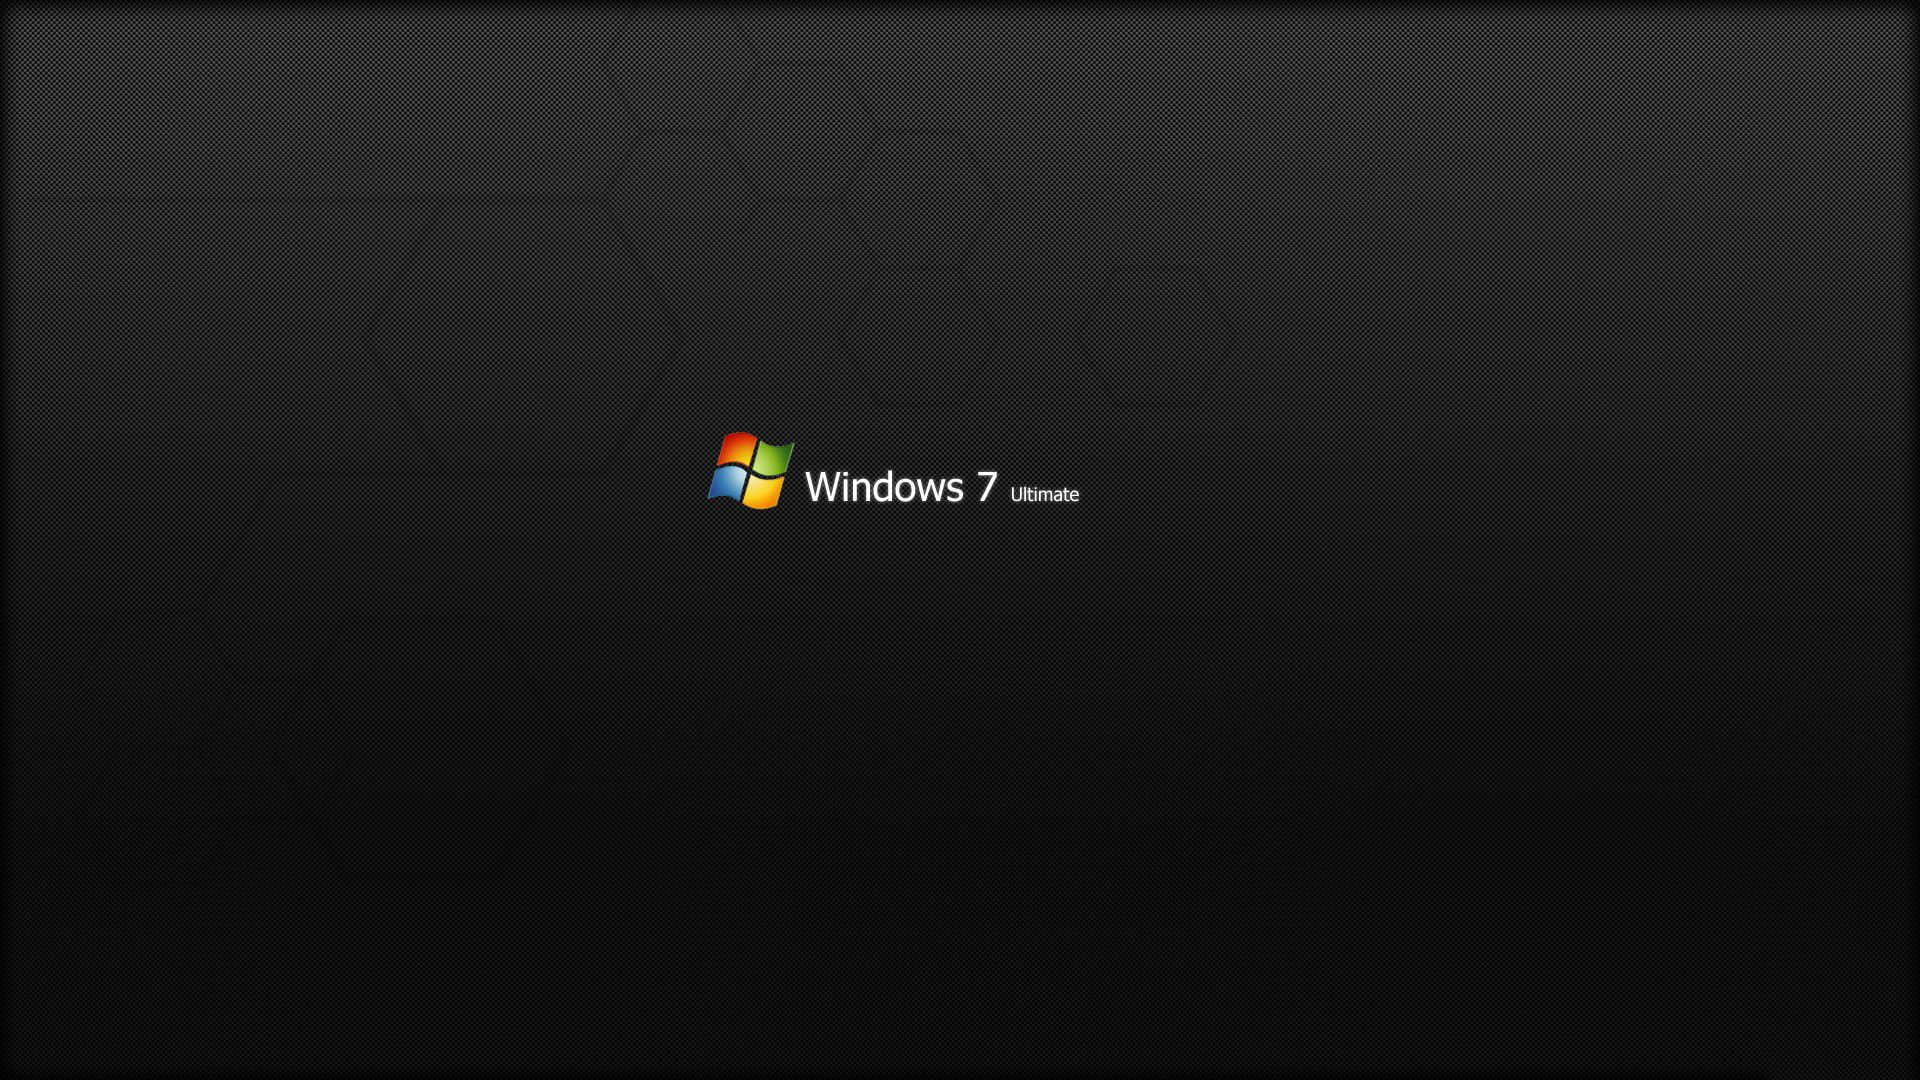 Windows 7 Ultimate Logo Carbon Texture Fondo De Escritorio